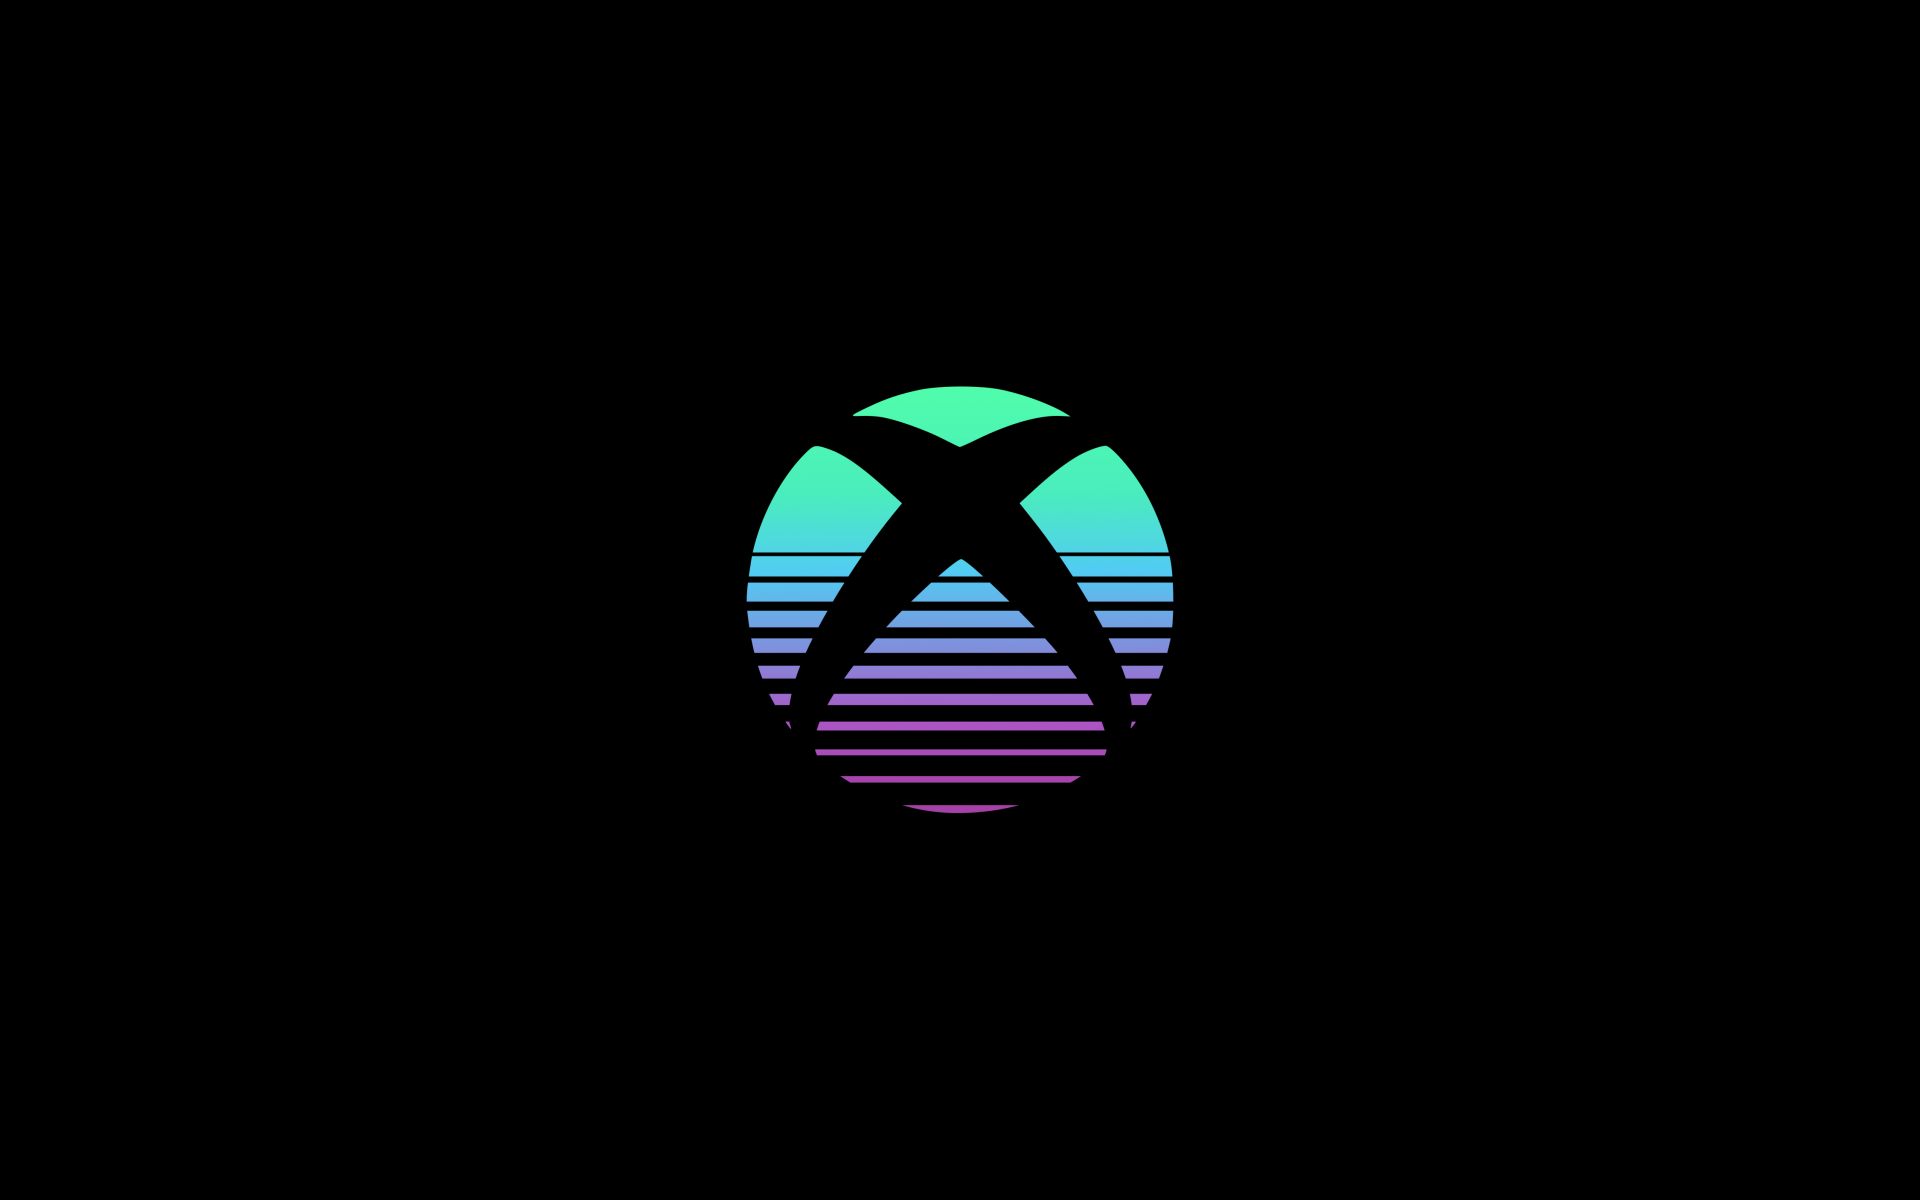 Hình nền Xbox với logo nổi bật sẽ khiến người xem thấy được sự đẳng cấp và sang trọng của thương hiệu này. Đồng thời, nó còn được coi là một niềm tự hào của người chơi với Xbox.